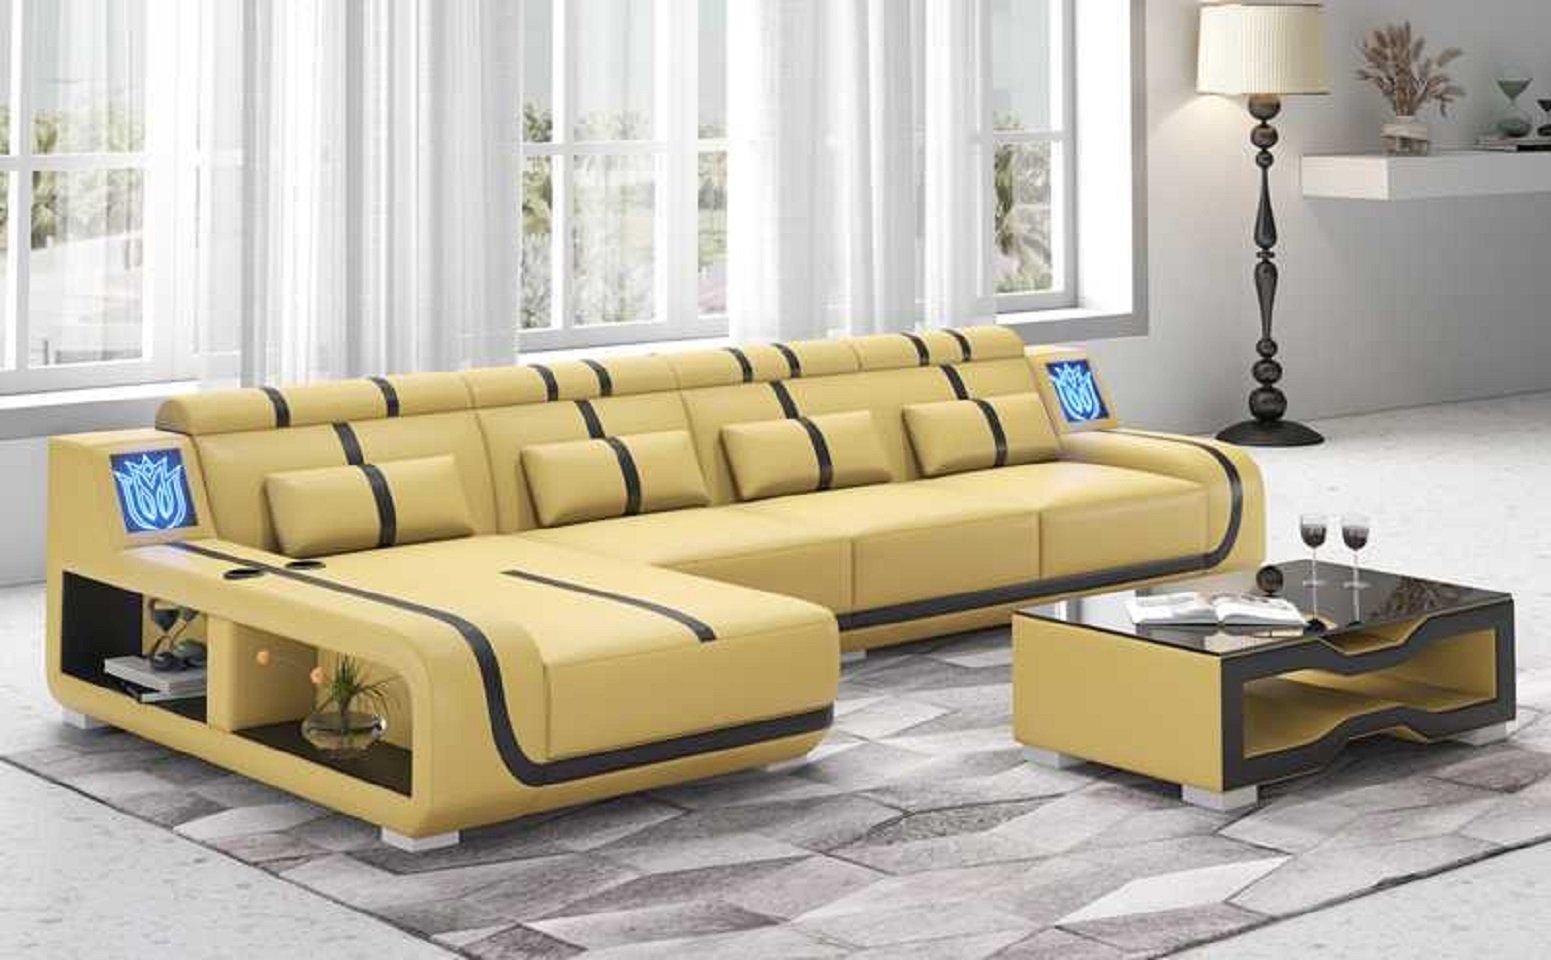 Teile, JVmoebel Form Design Ecksofa Liege 3 Made Beige Europe Ecksofa L Sofa Modern Couch couchen, in